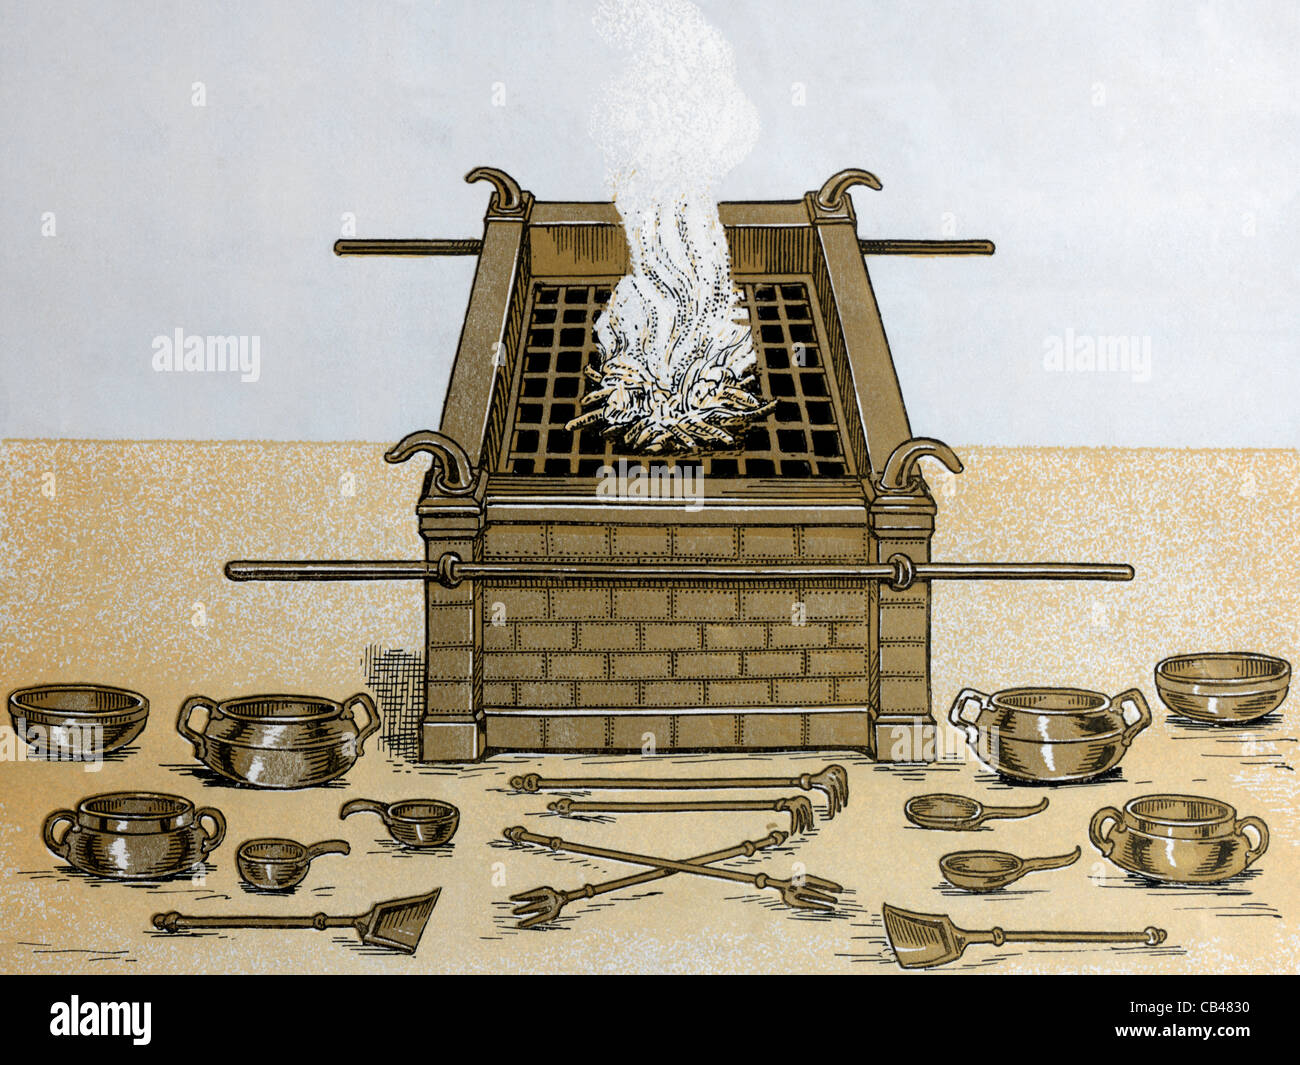 Una ilustración del altar de bronce (Éxodo XXXVIII) del Tabernáculo en el desierto Foto de stock